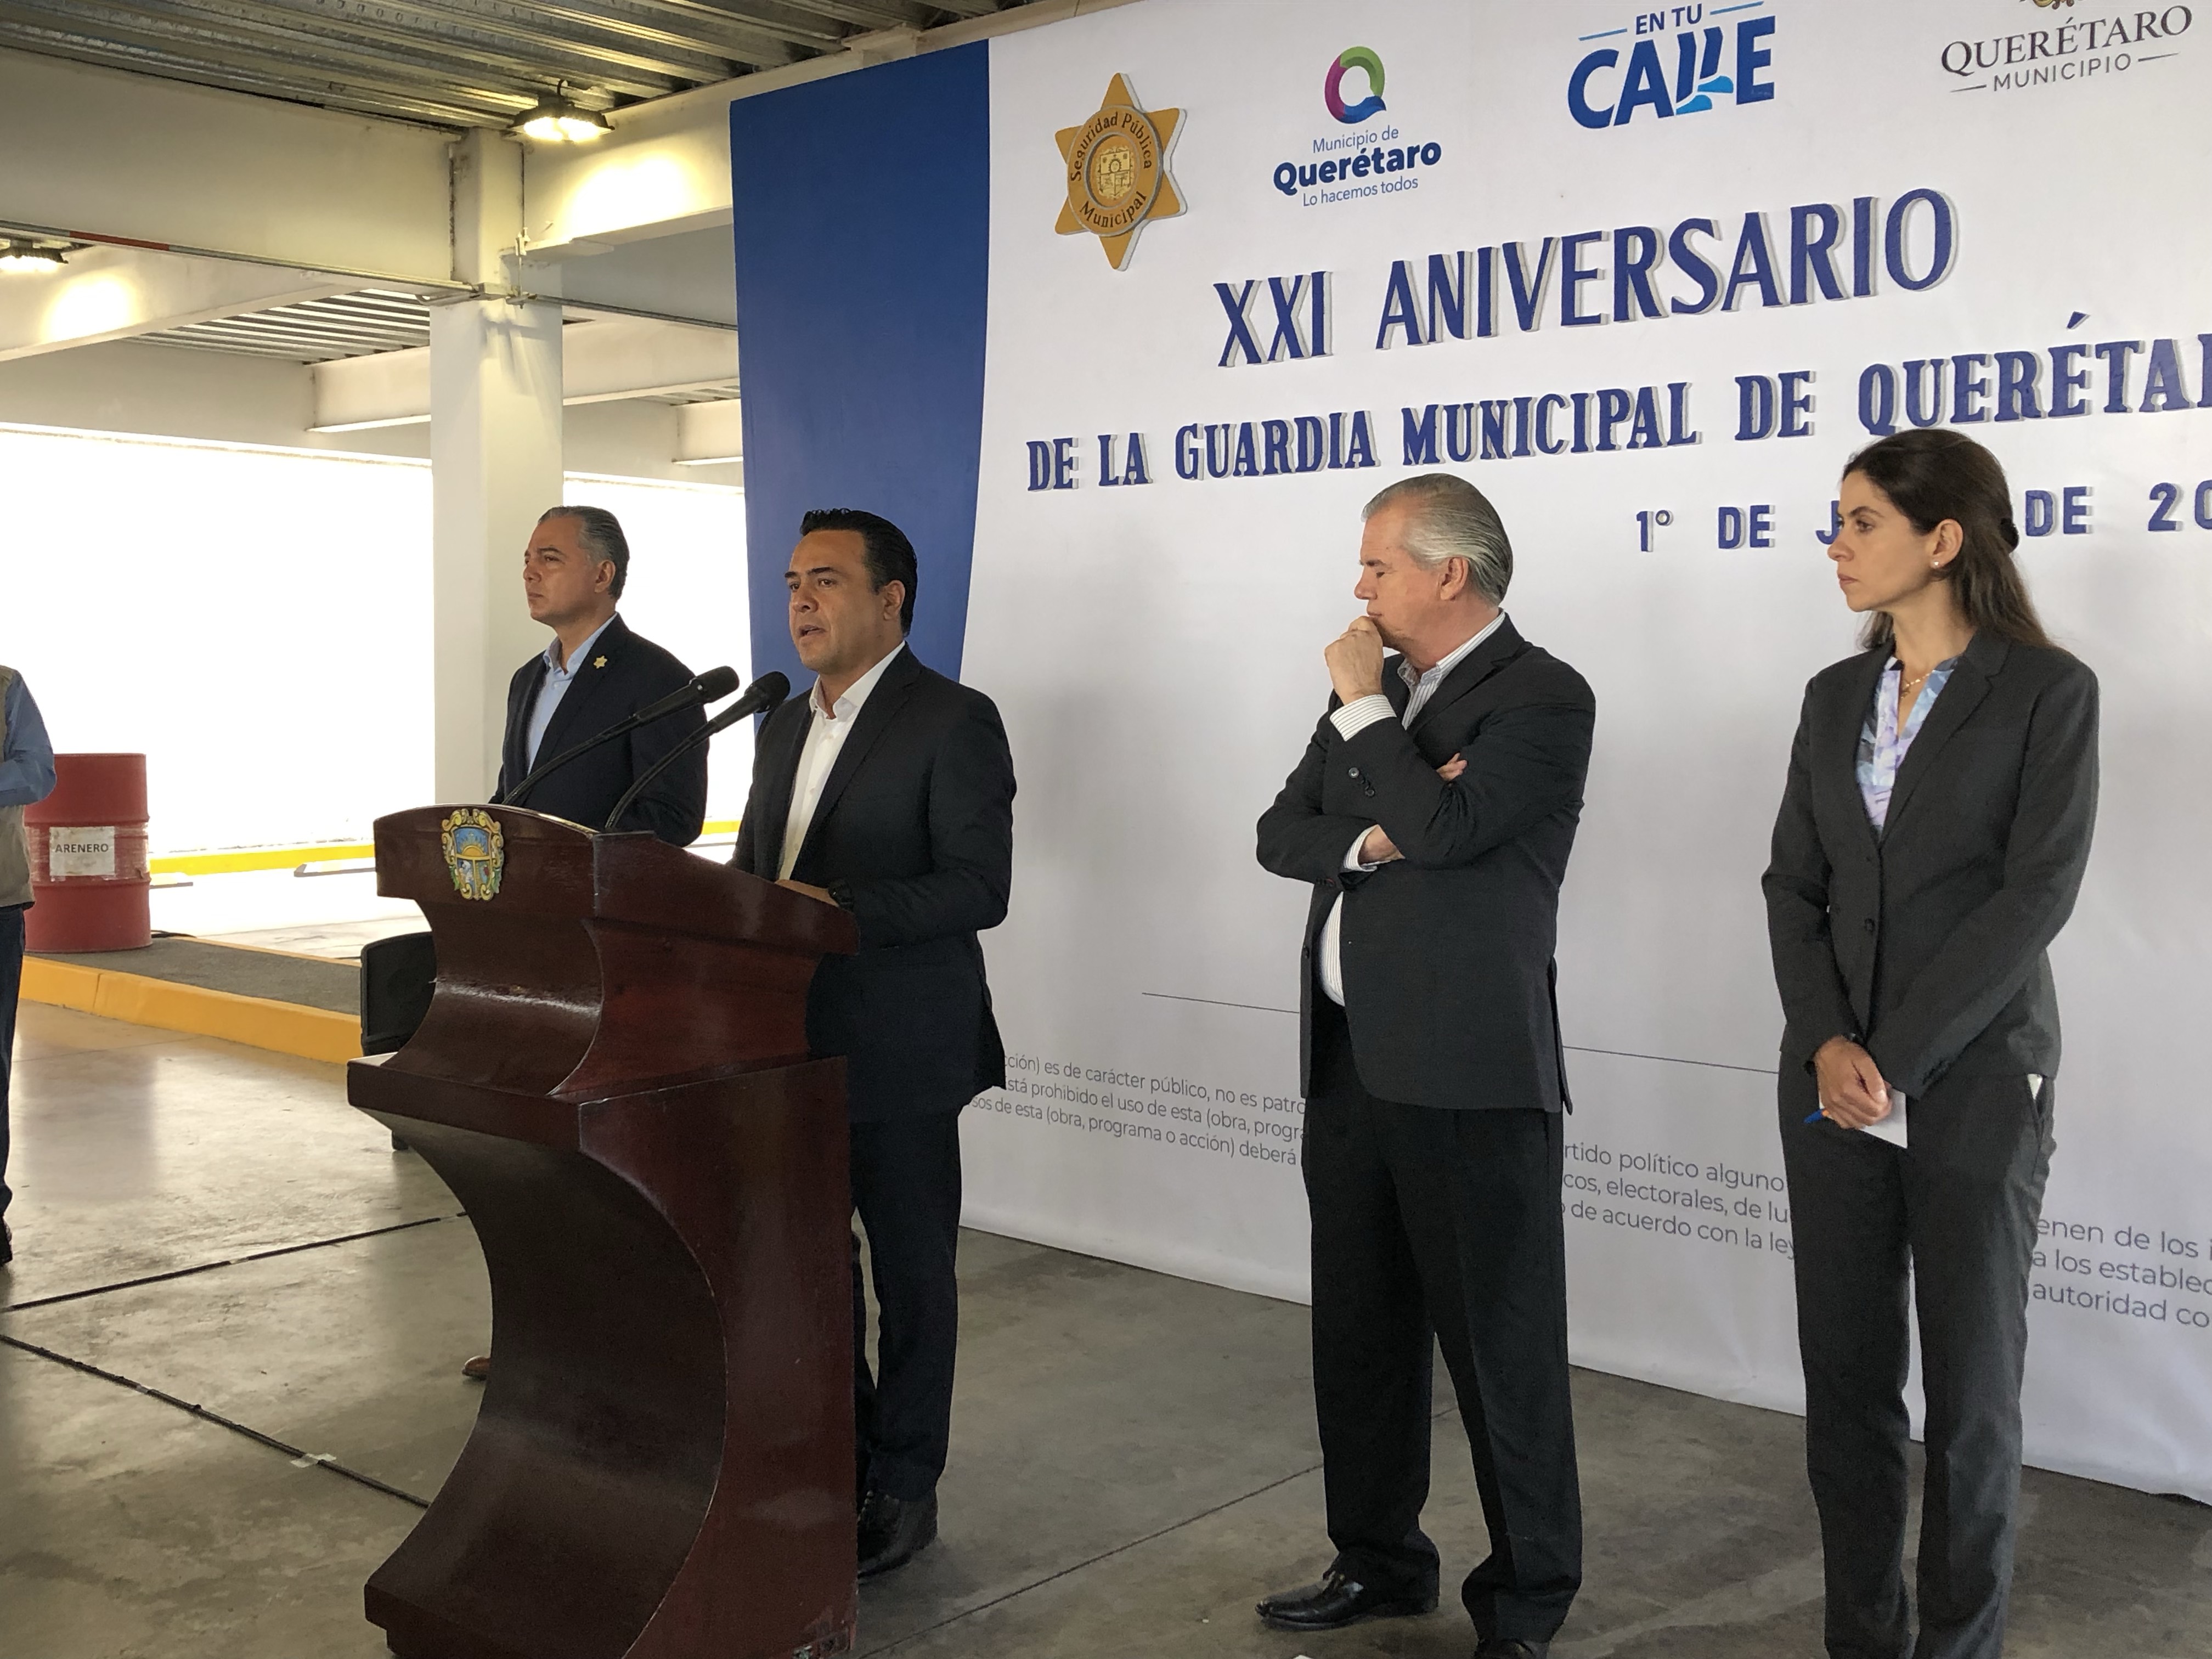  Celebra Luis Nava el XXI aniversario de la Guardia Municipal de Querétaro